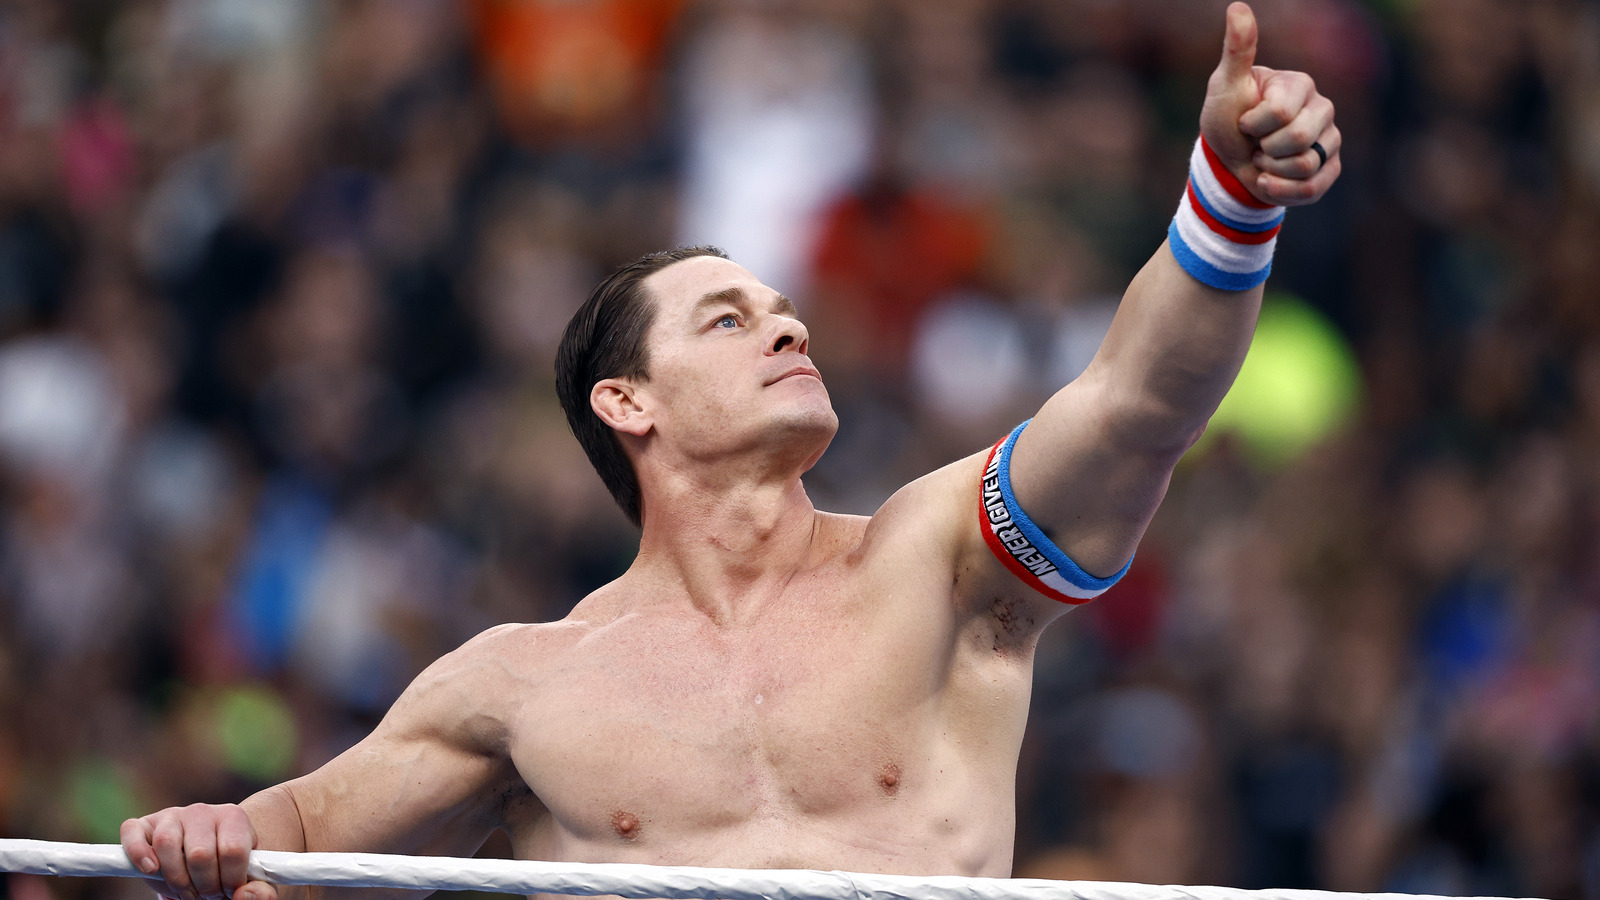 Actualización entre bastidores sobre la aparición MITB de John Cena y posible WrestleMania en el Reino Unido